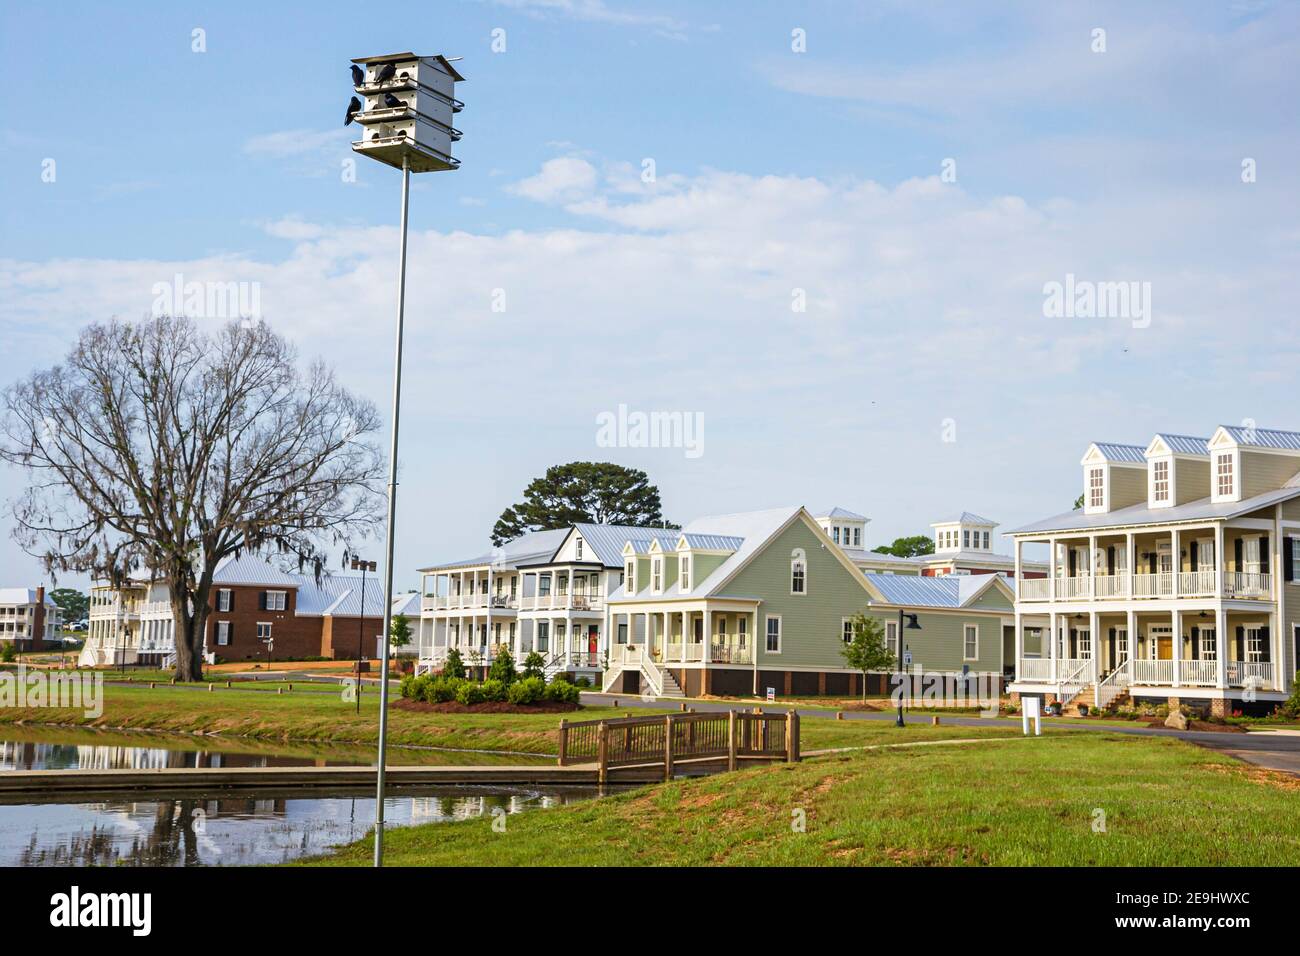 Alabama Montgomeery Pike Road le acque hanno progettato case di comunità, tradizionale americana architettura portico esterno birdhouse, Foto Stock